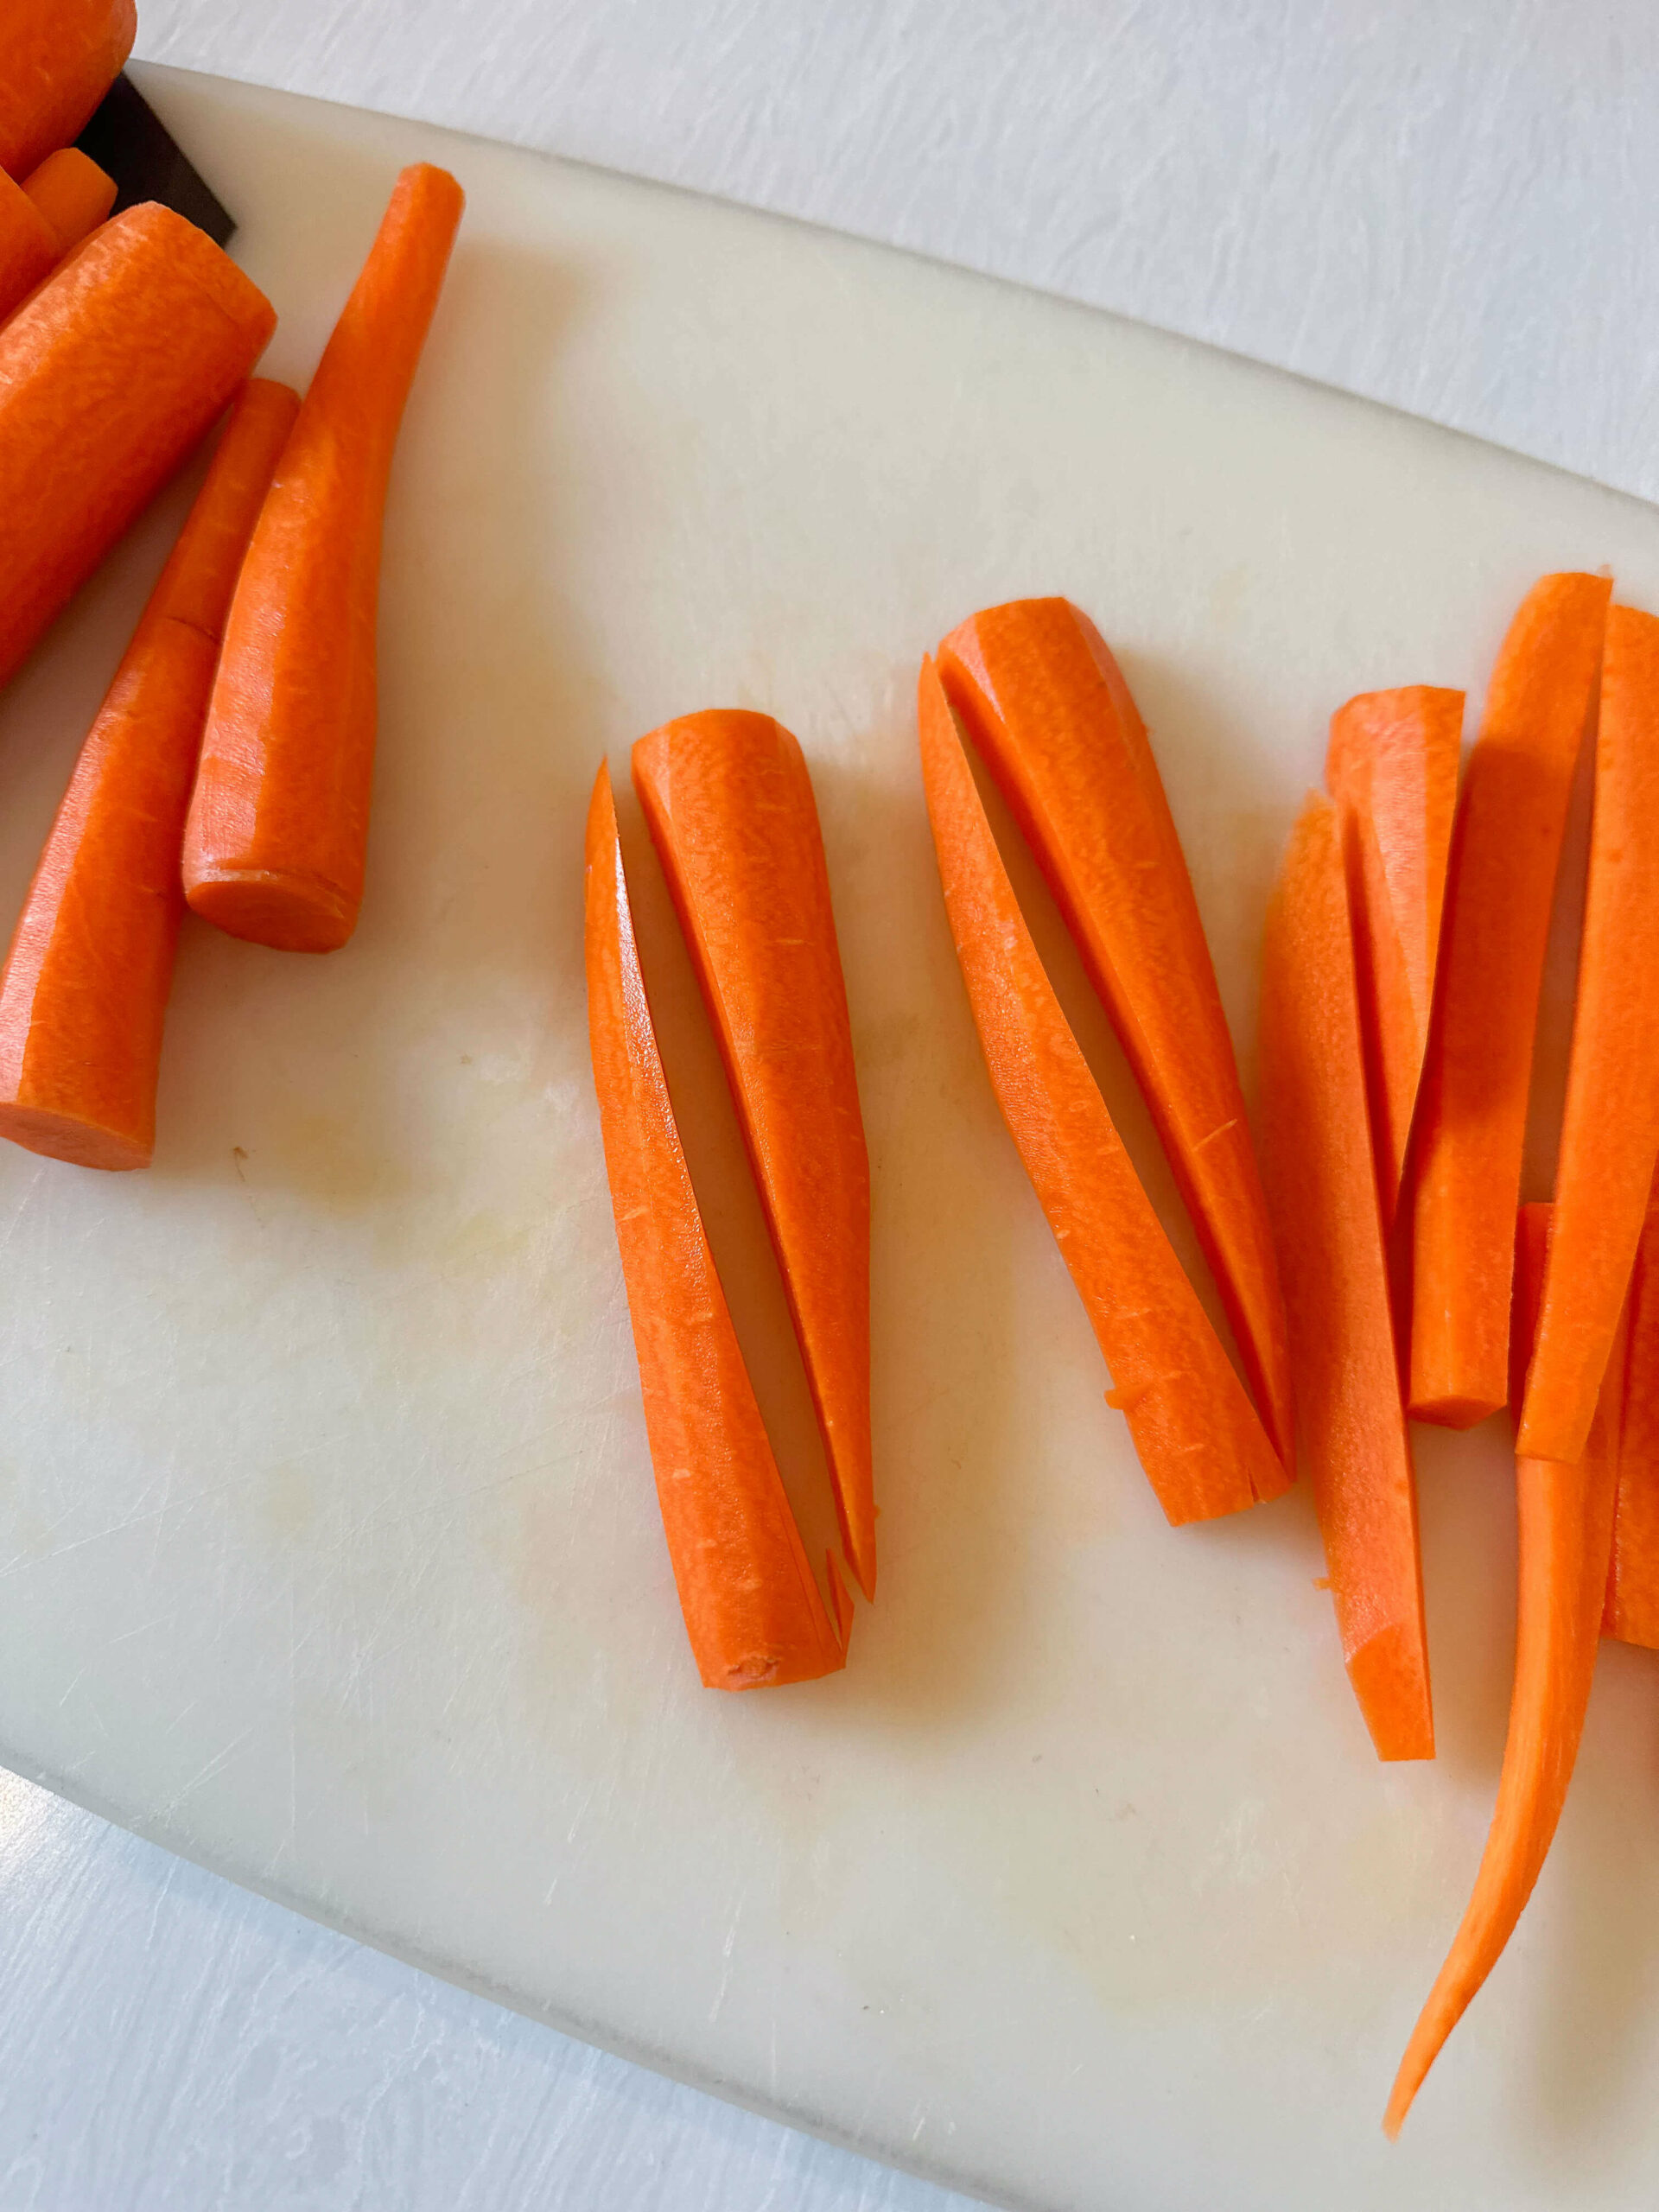 Carrots cut in a diagonal 